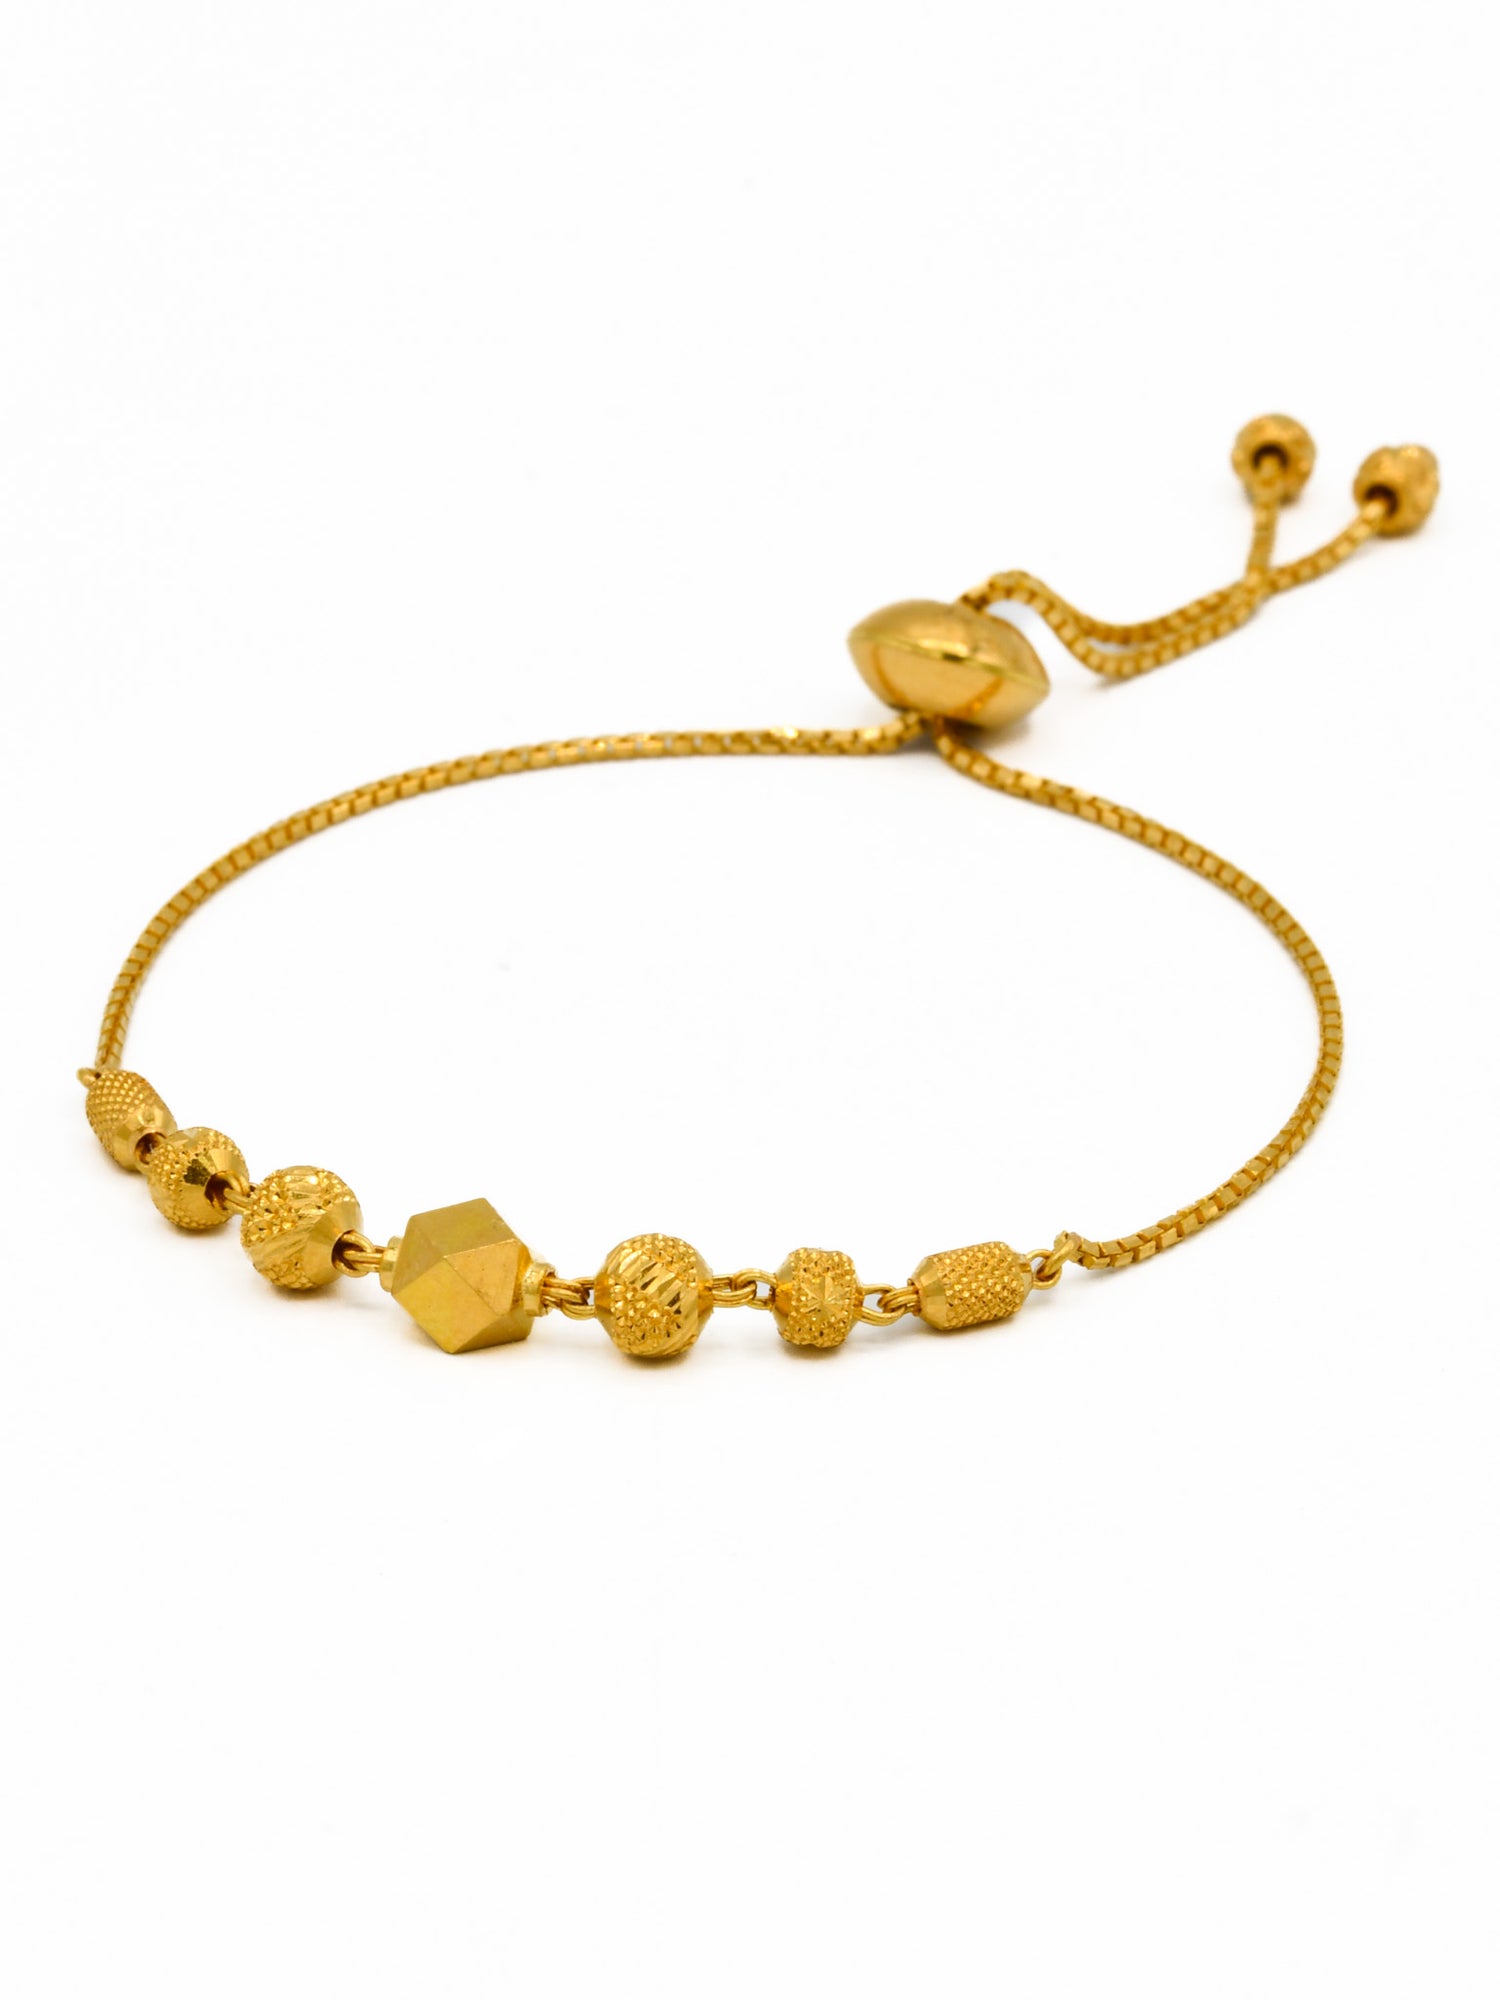 22ct Gold Ball Adjustable Ladies Bracelet - Roop Darshan